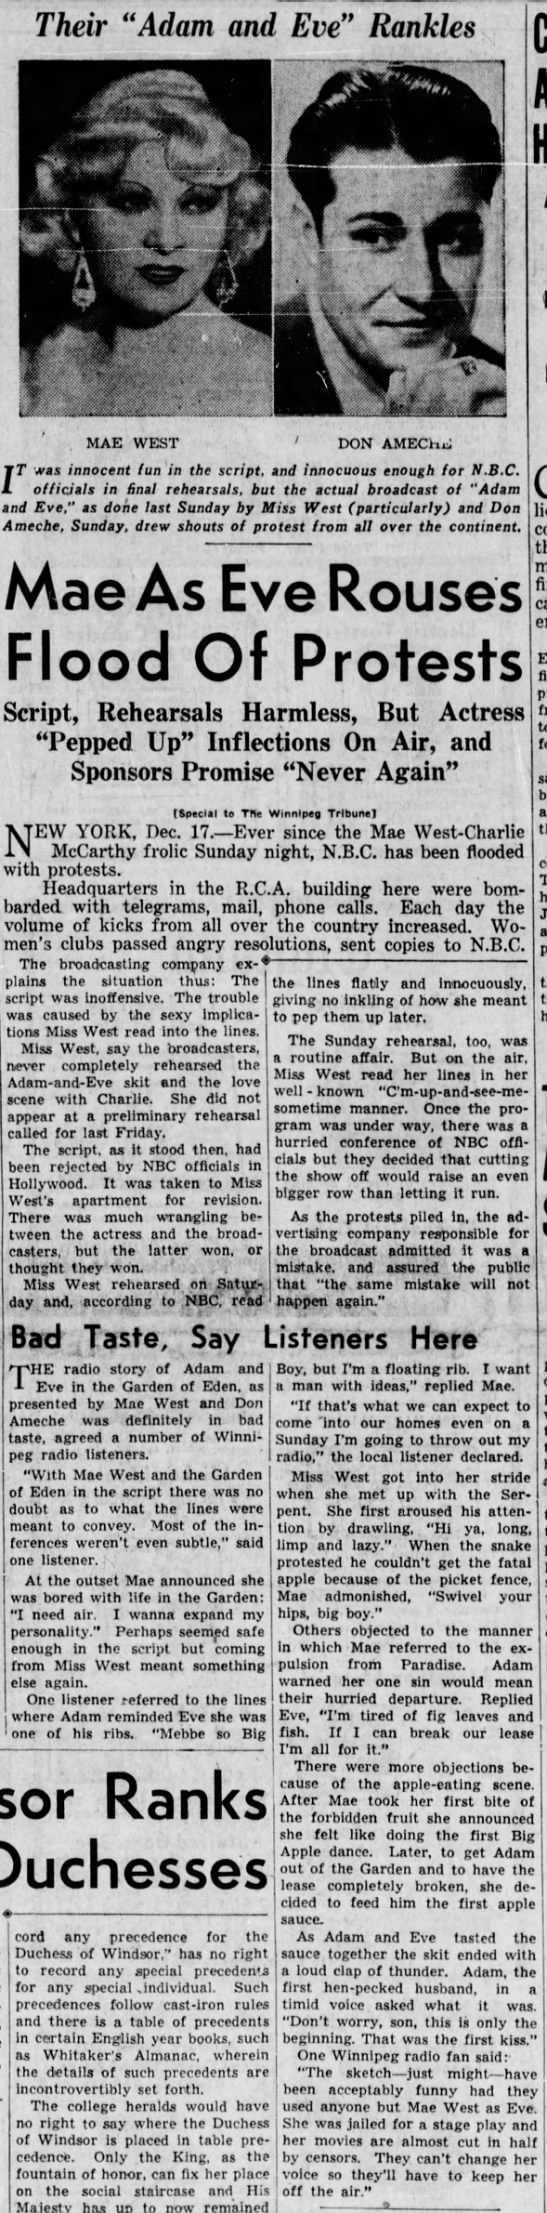 Mae West's "Big Apple" 1937 radio skit causes uproar. - 